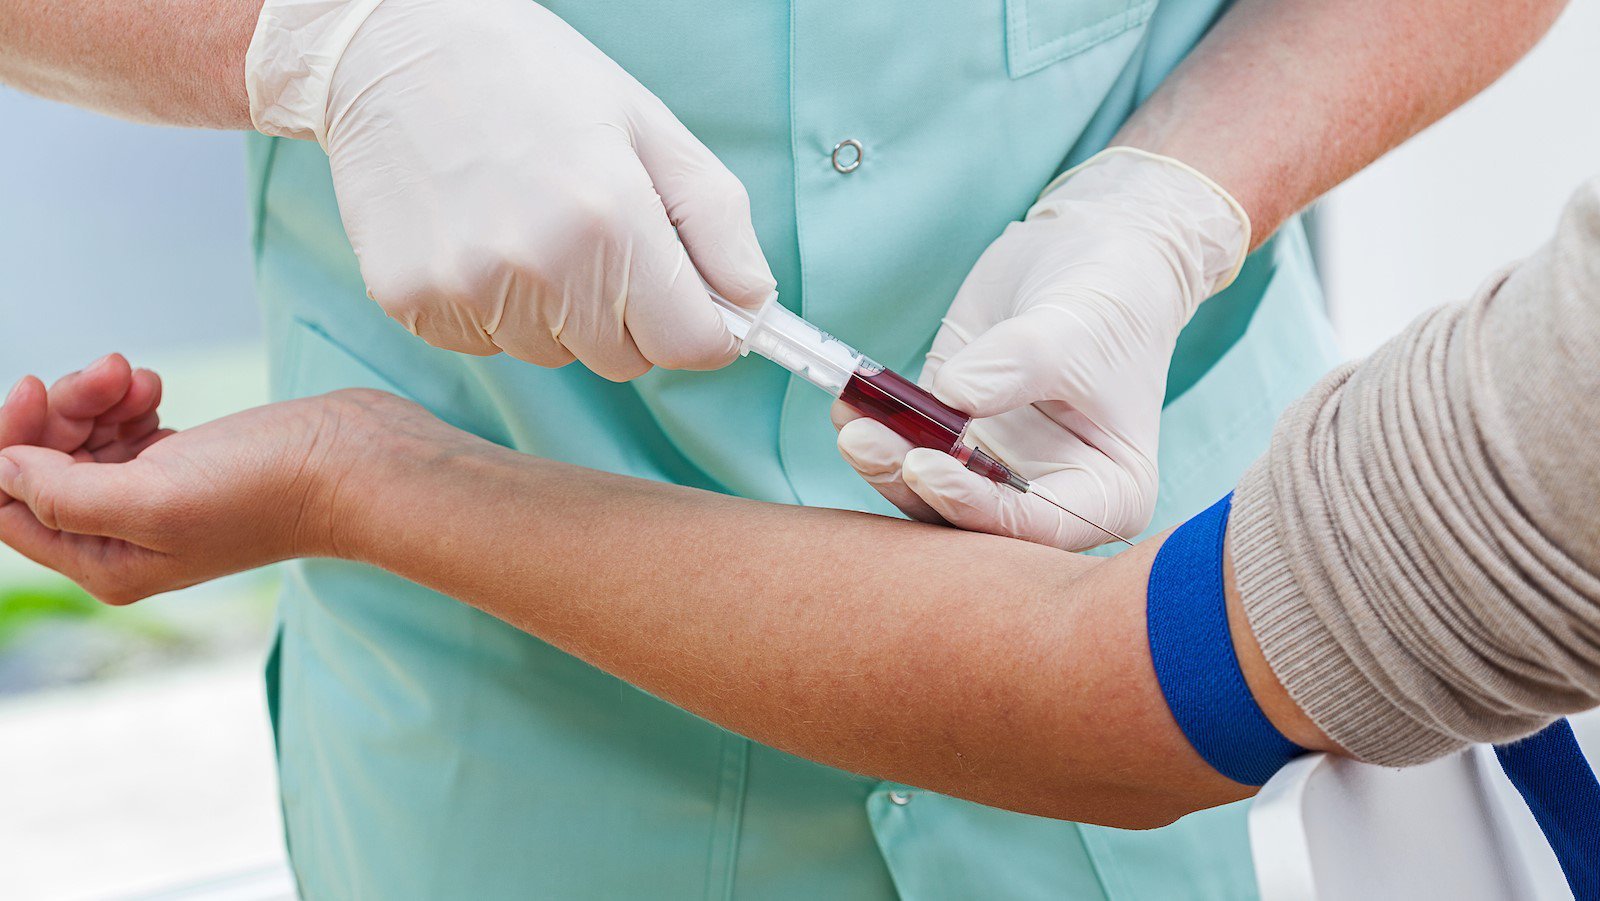   Bác sĩ có thể tiết lộ cho bạn biết 9 vấn đề thông qua xét nghiệm máu  